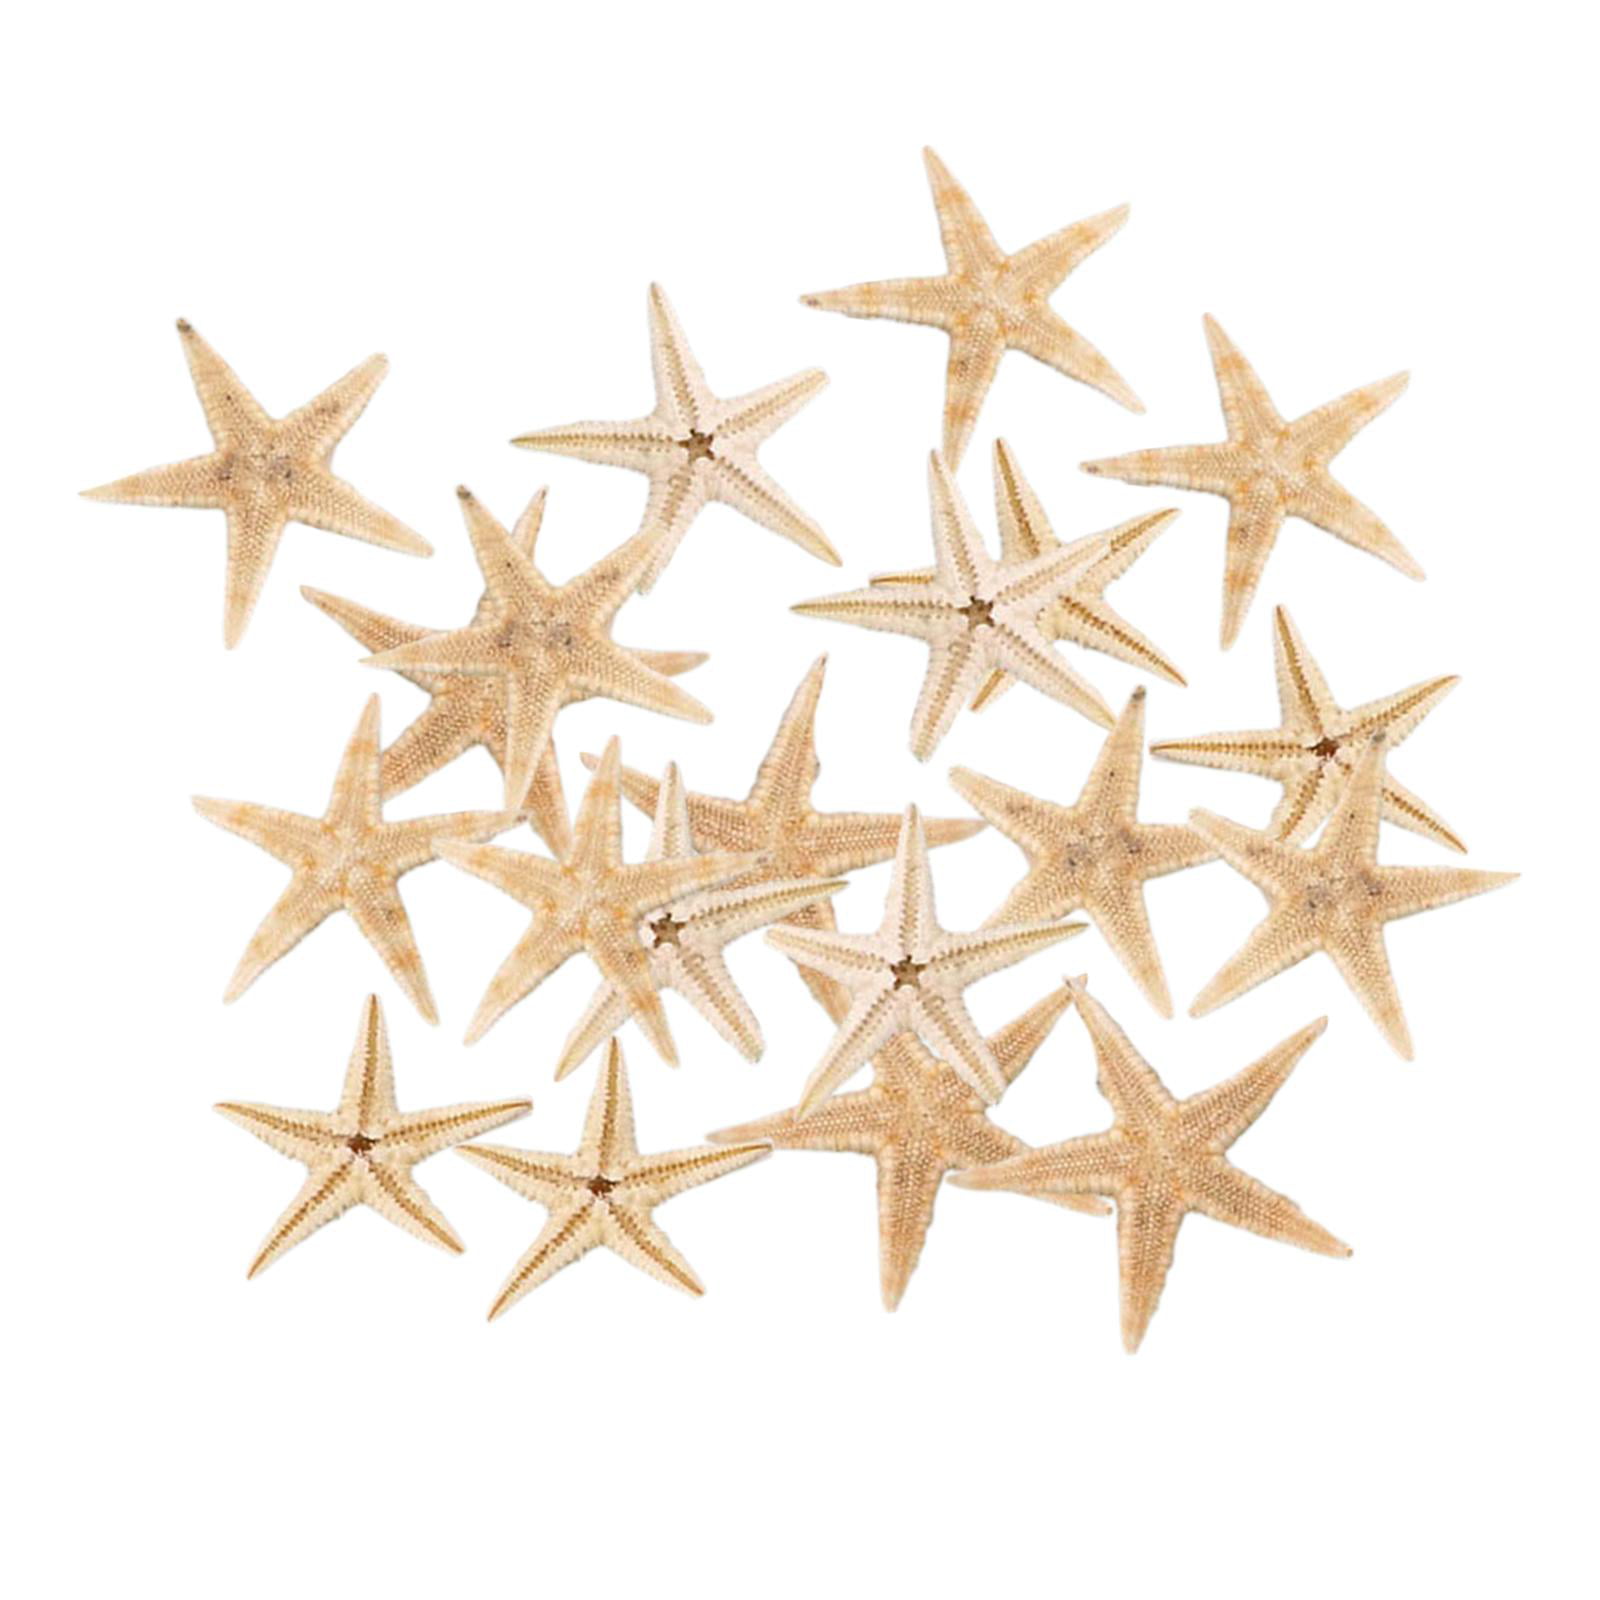 Event Gift Christmas art 100 x large natural starfish Sea shell wedding decor 